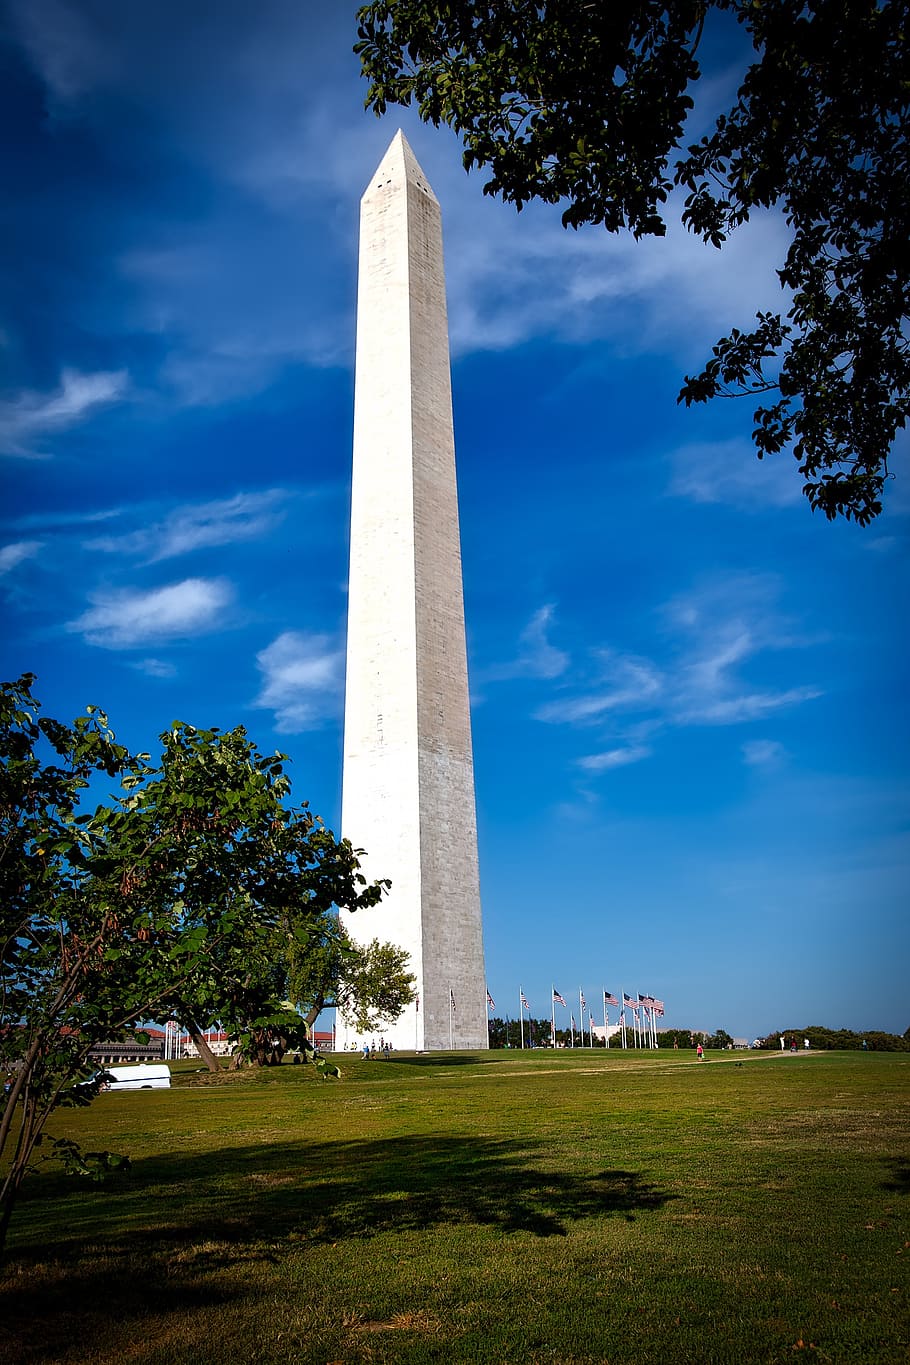 monumento de washington, d.c., washington dc, c, arquitetura, américa, céu, nuvens, atrações, turismo